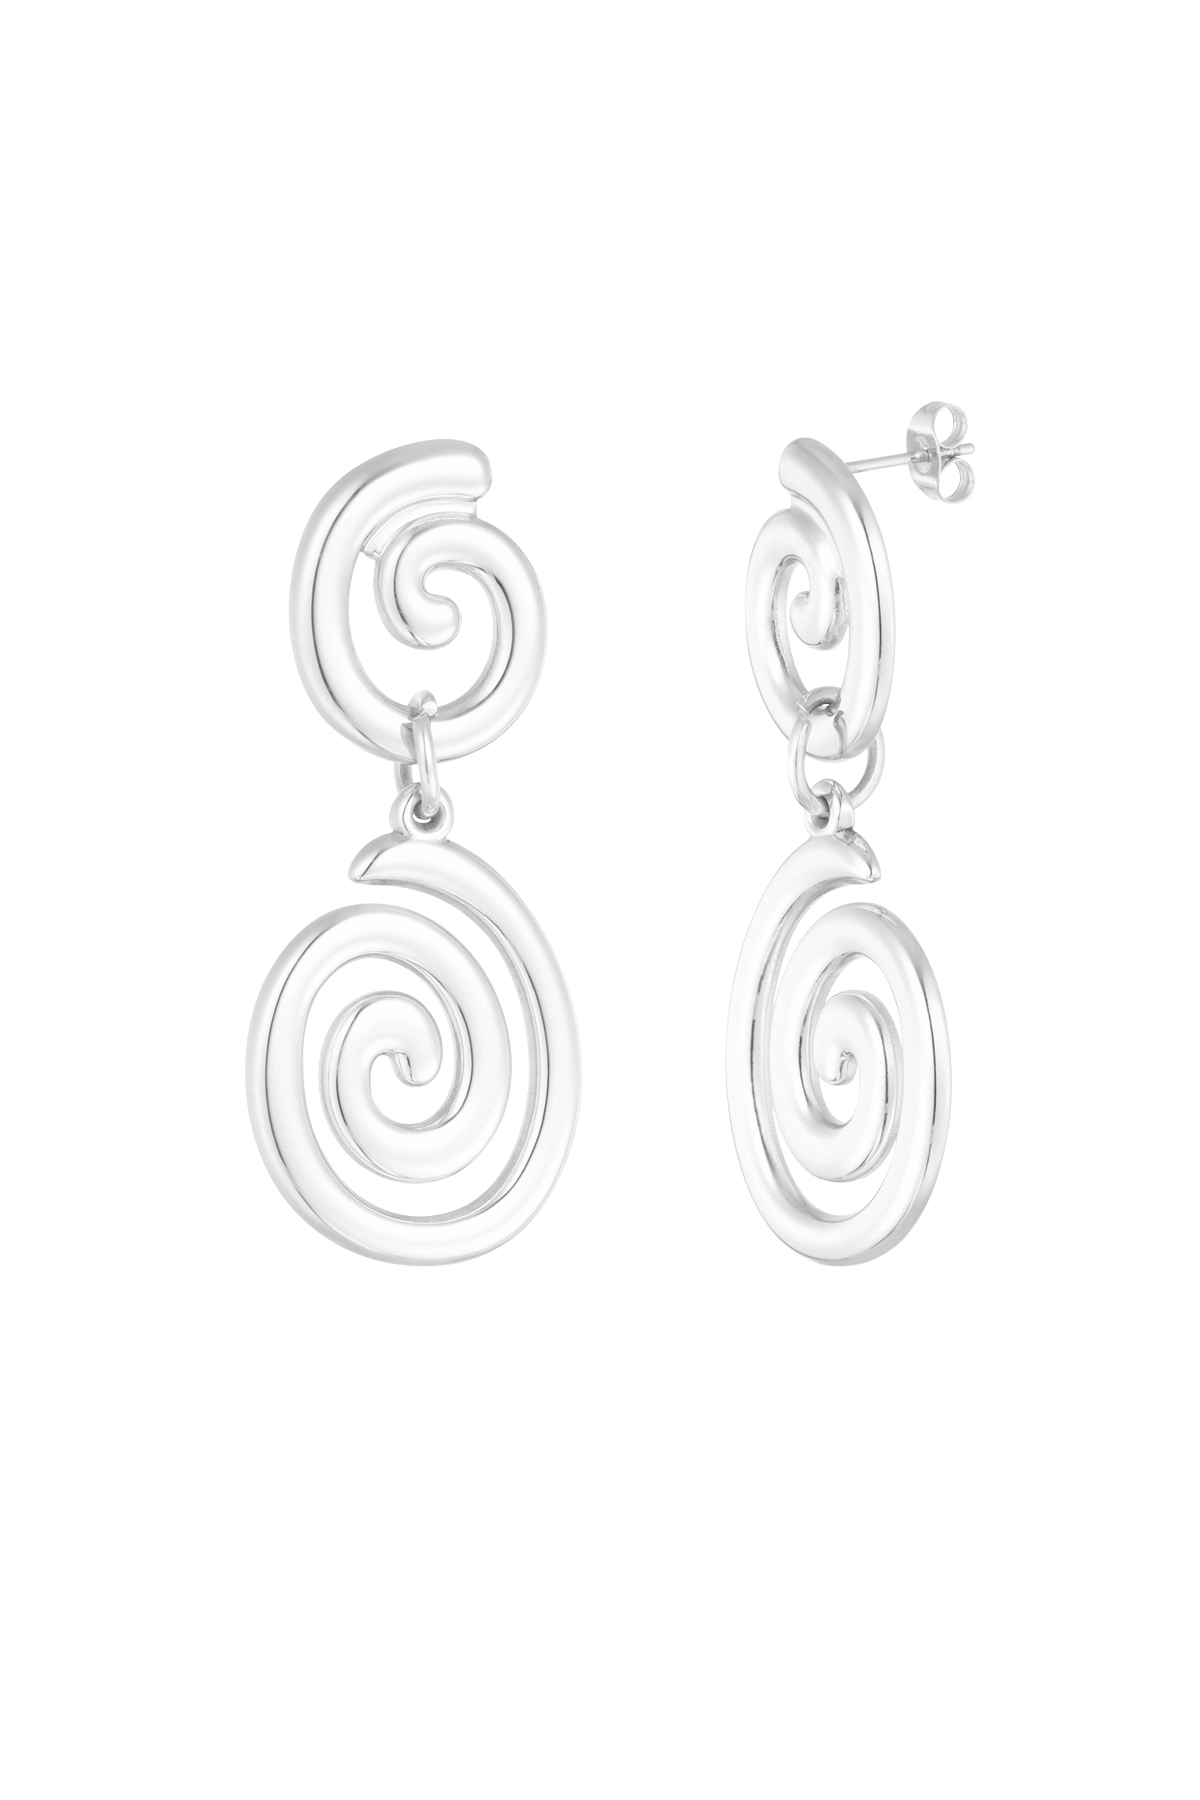 Earrings swirly wave - silver h5 